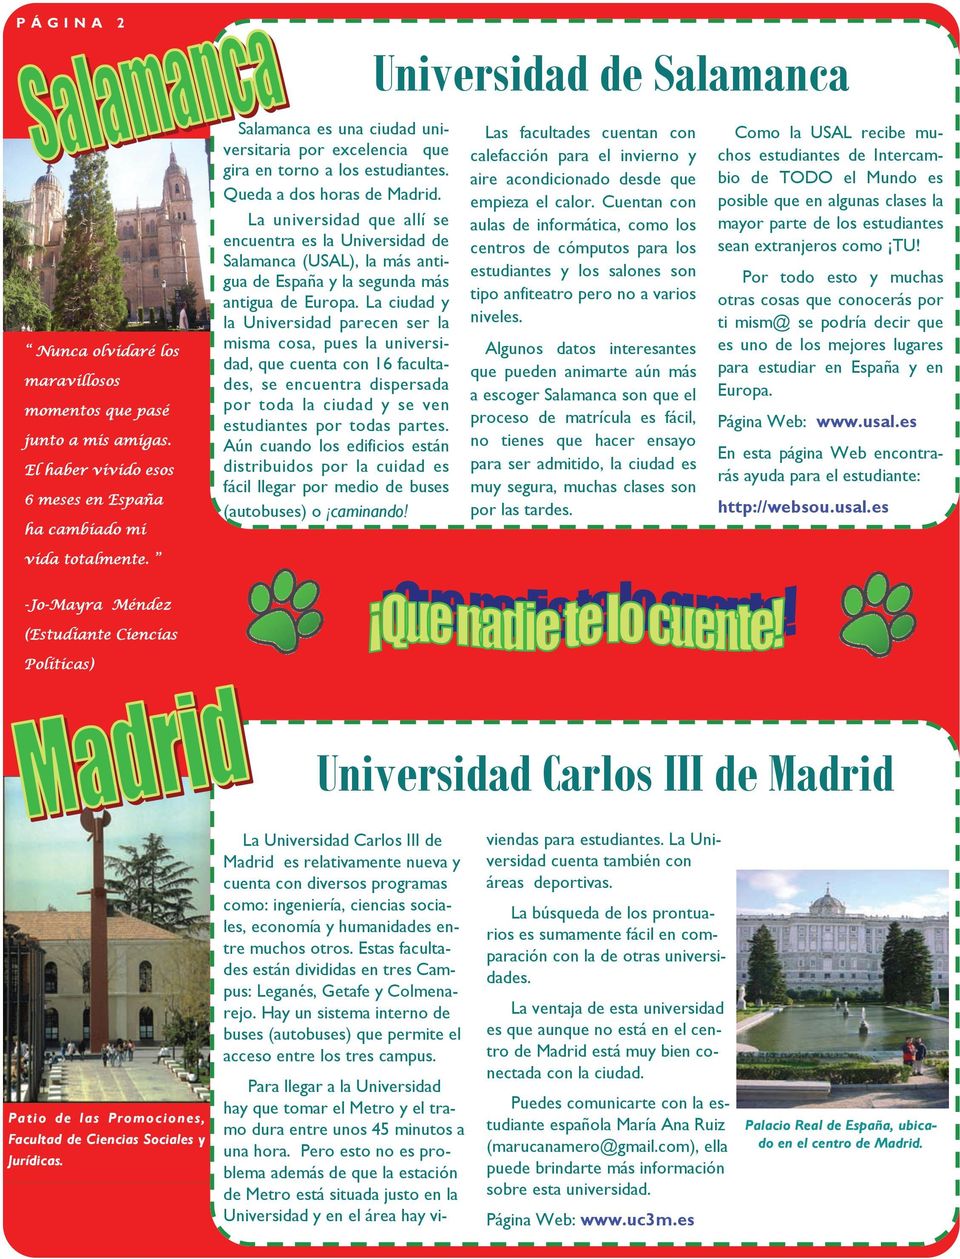 La universidad que allí se encuentra es la Universidad de Salamanca (USAL), la más antigua de España y la segunda más antigua de Europa.